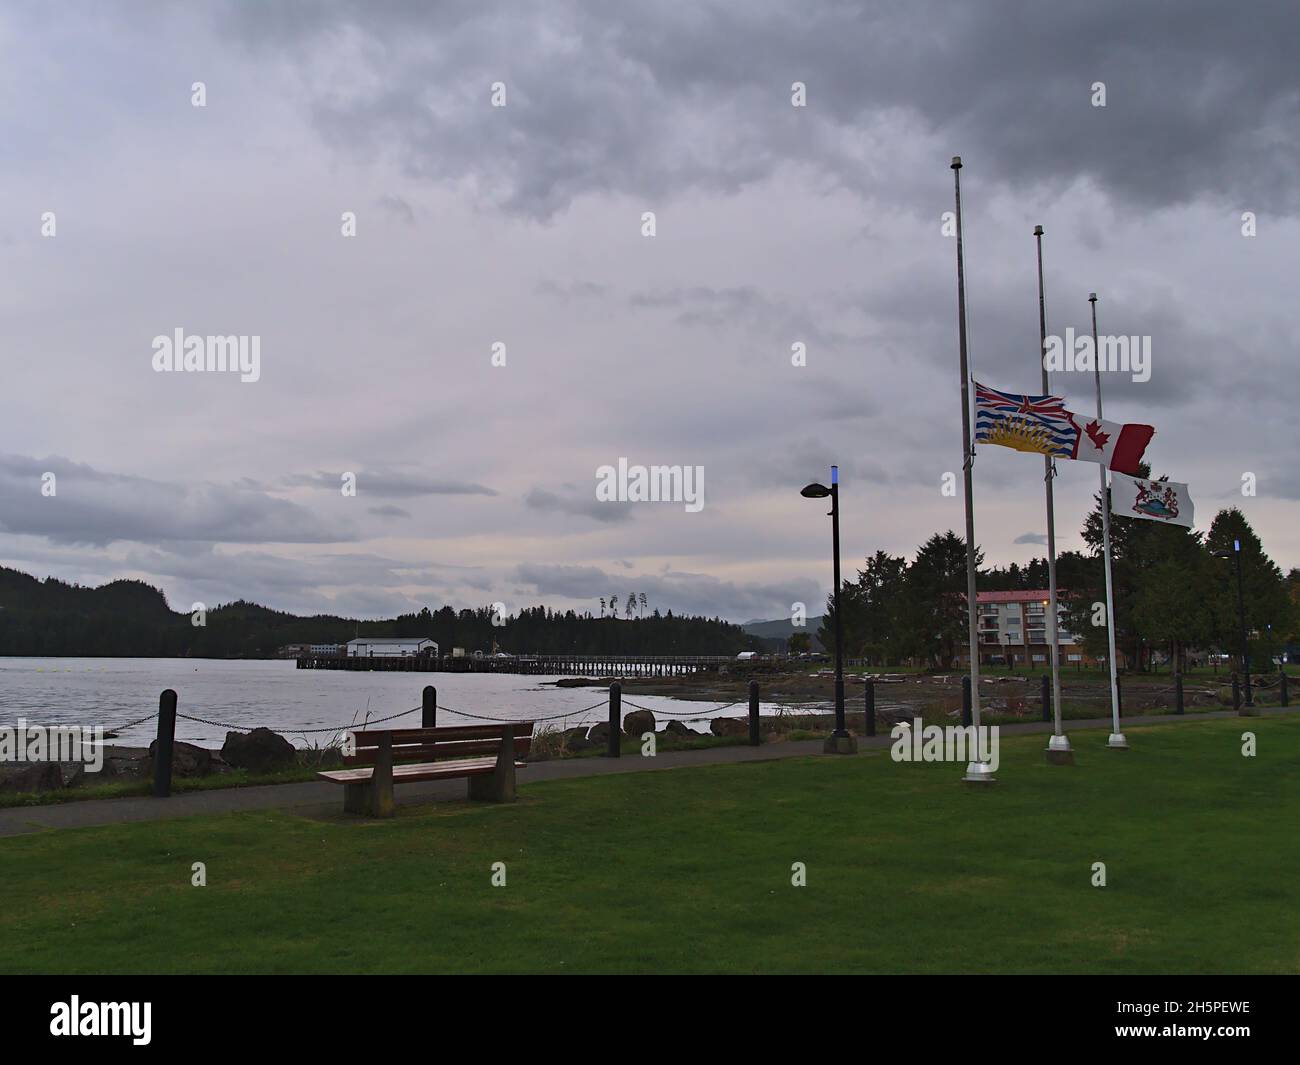 Vue sur le parc Carrot sur la rive de la petite ville de Port Hardy sur l'île de Vancouver, Colombie-Britannique, Canada le jour nuageux en automne avec drapeaux volants. Banque D'Images